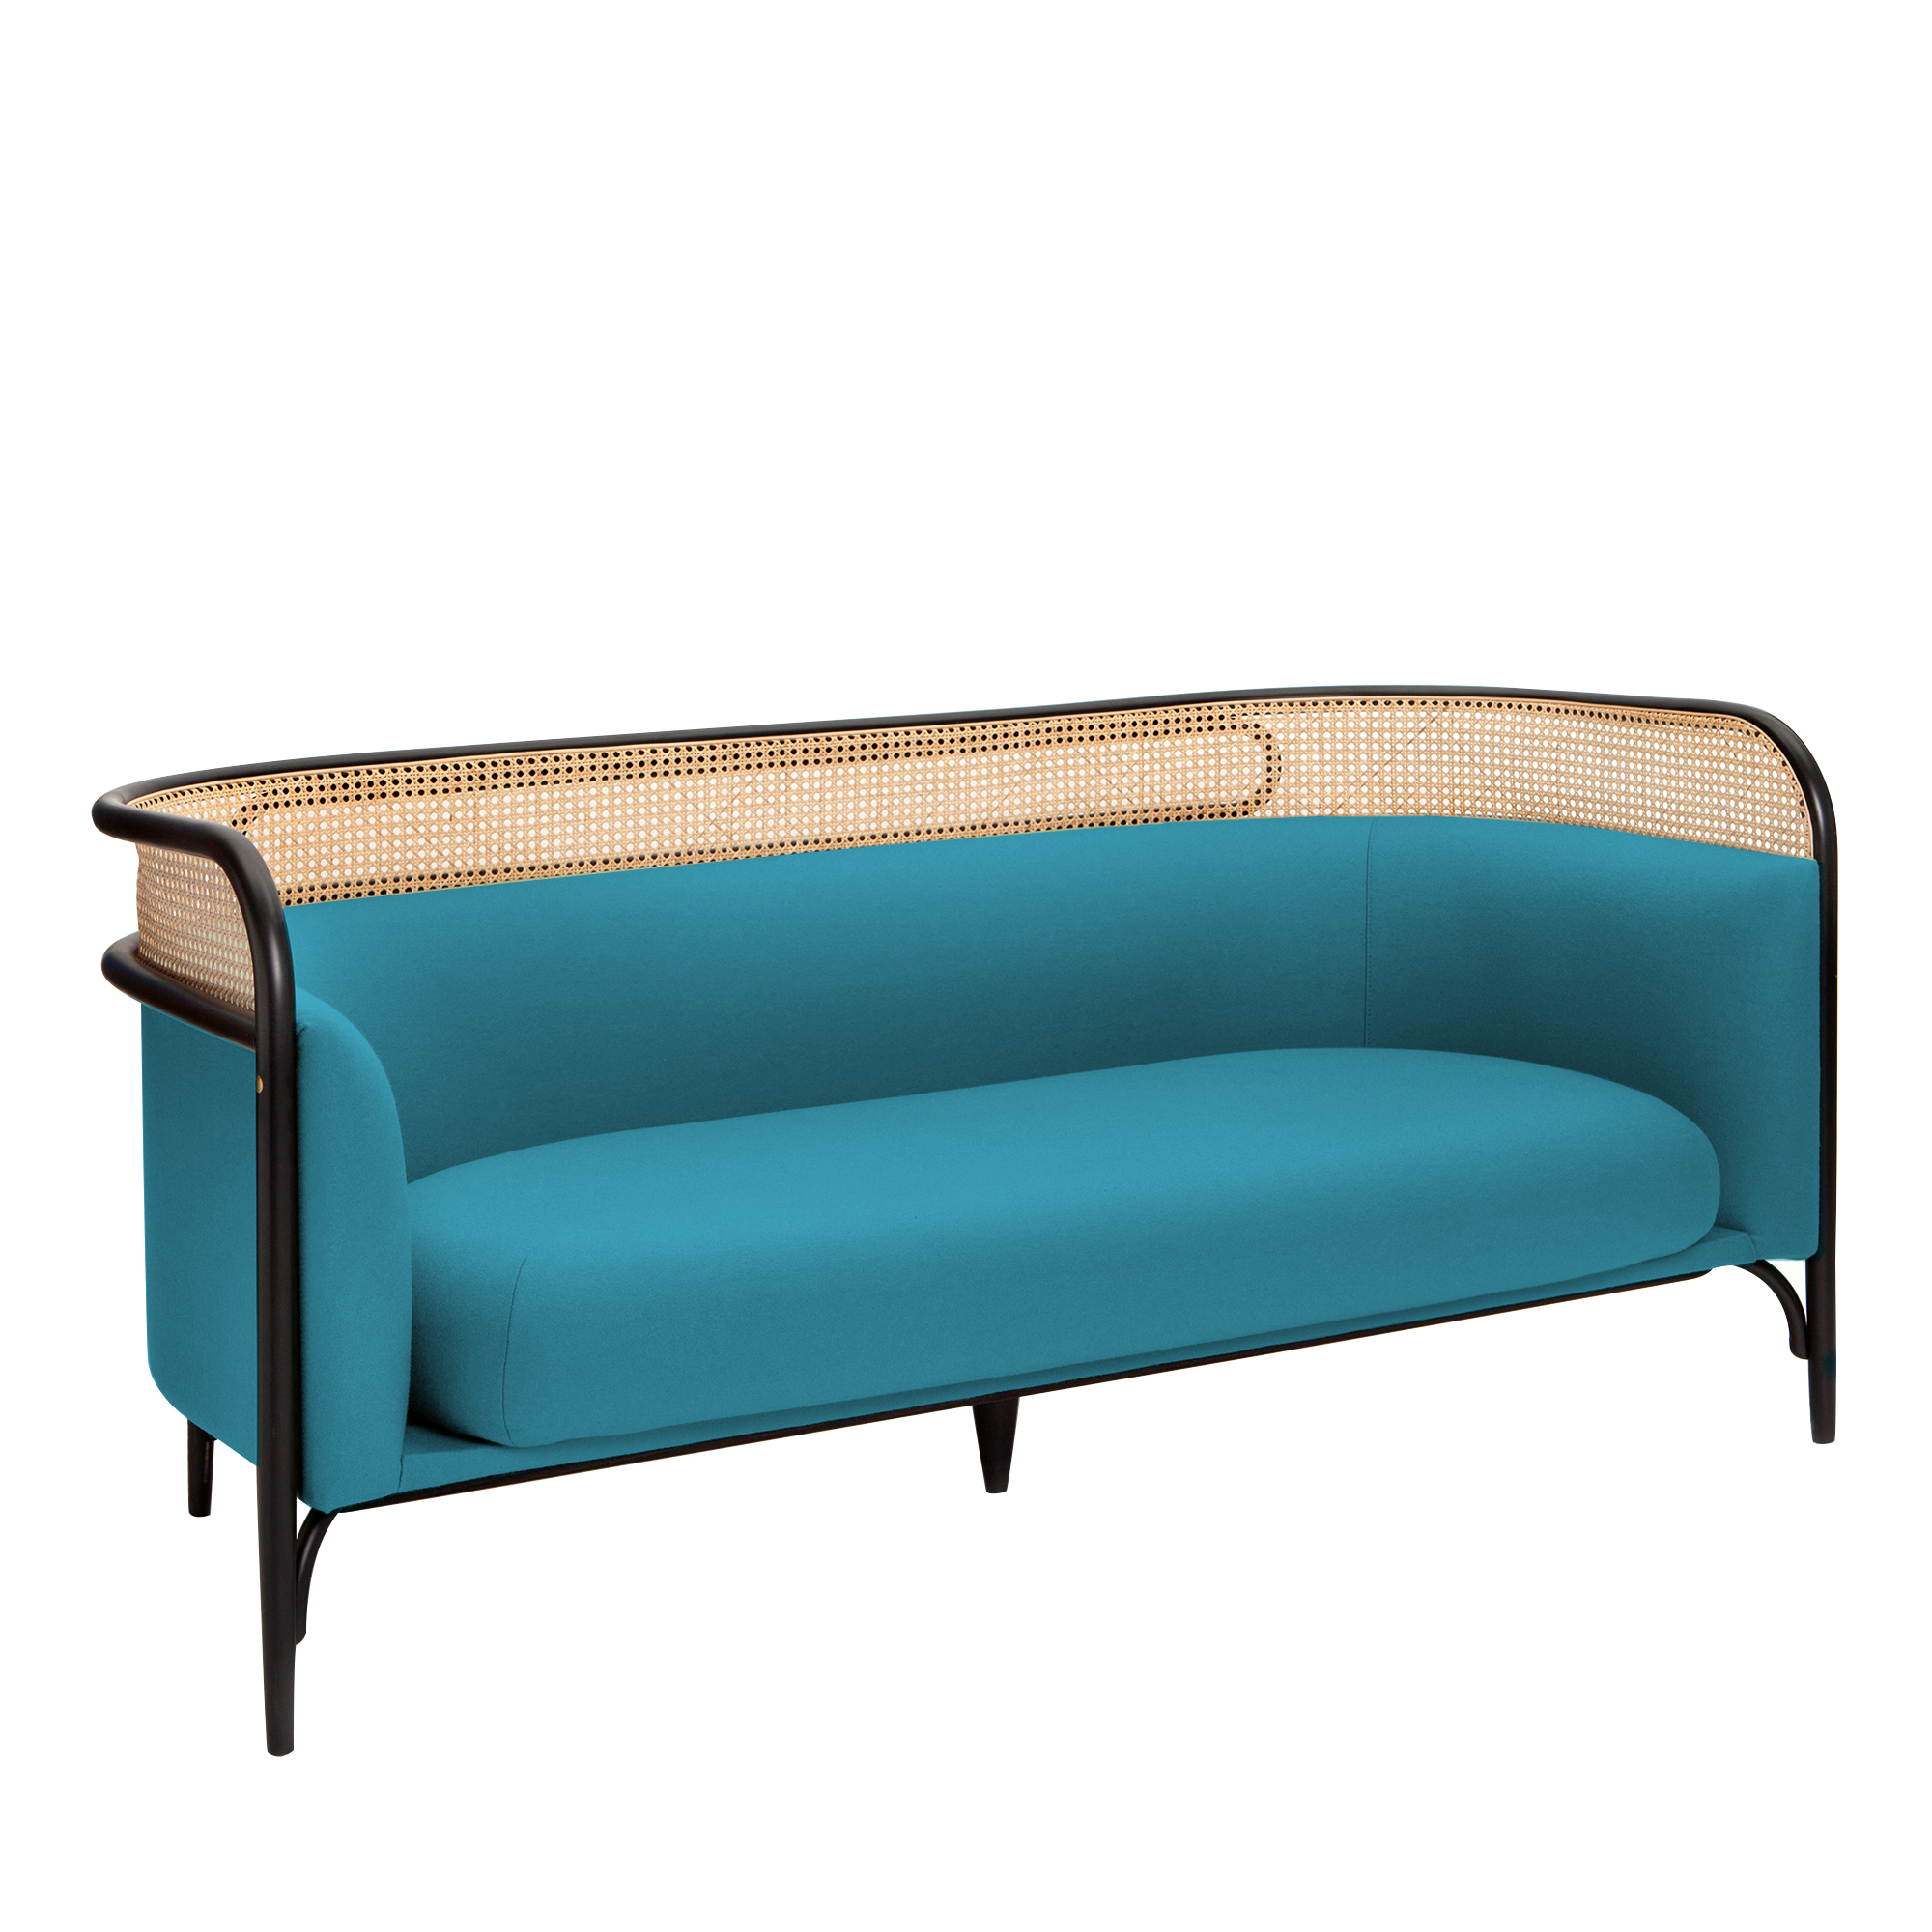 Targa Light Blue Sofa, Gebruder Thonet Vienna GmbH (GTV) – Wiener GTV Design